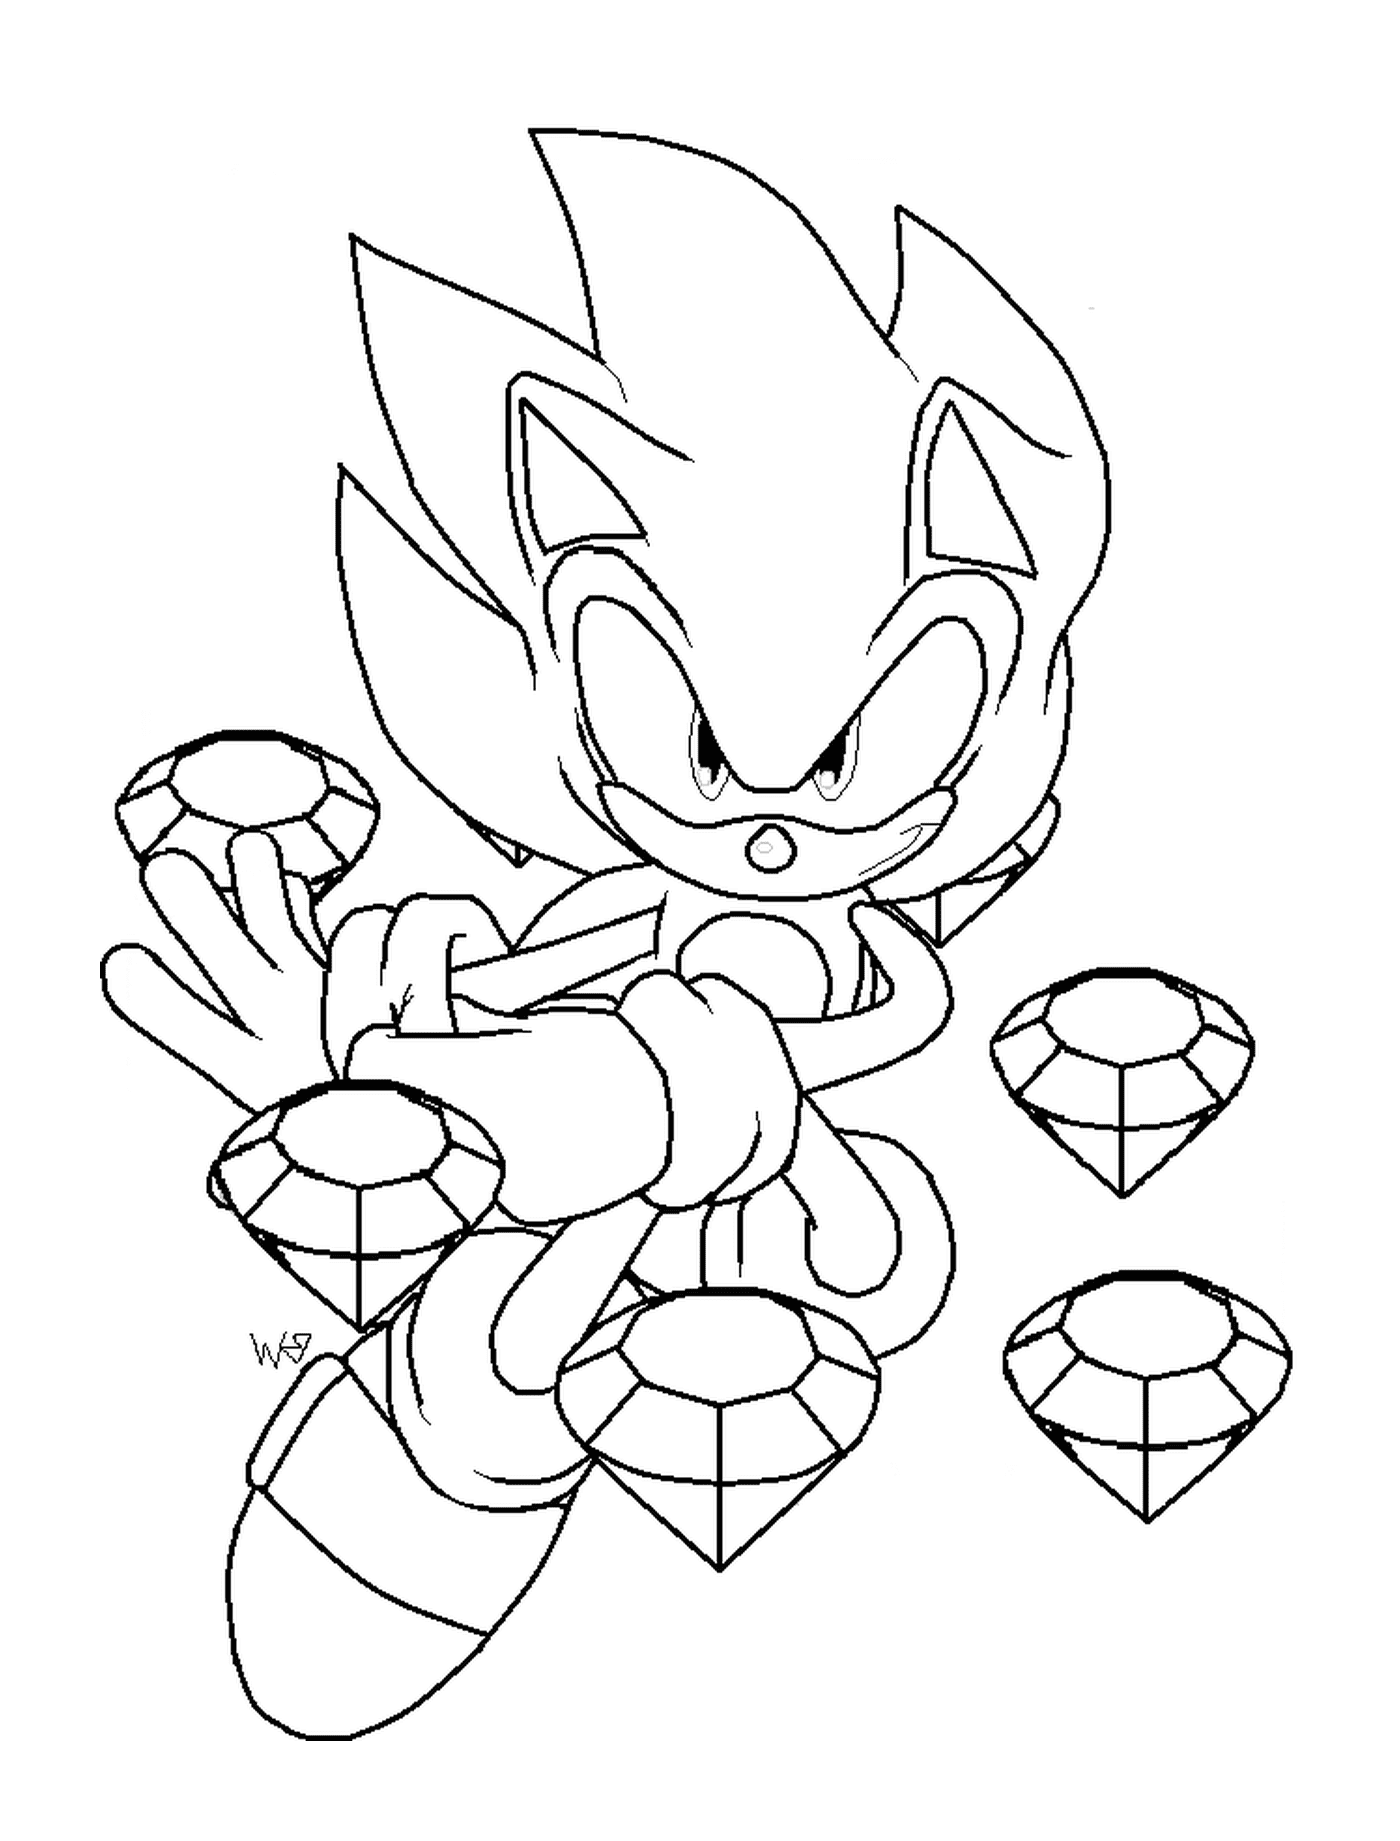  Super potente Sonic 